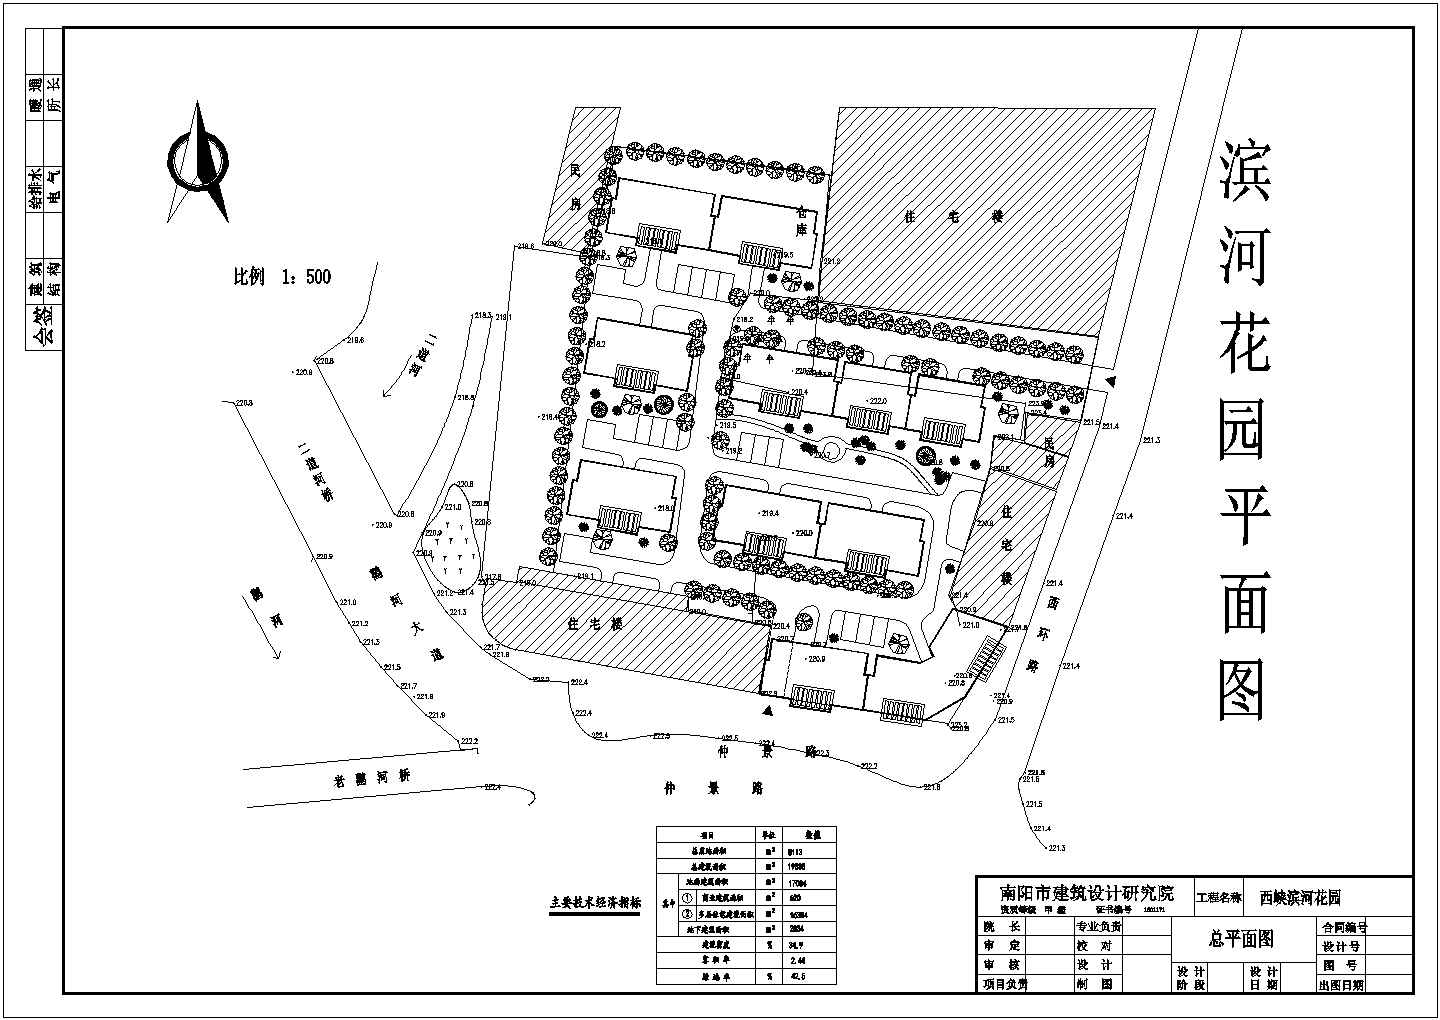 19838平米住宅小区规划设计图